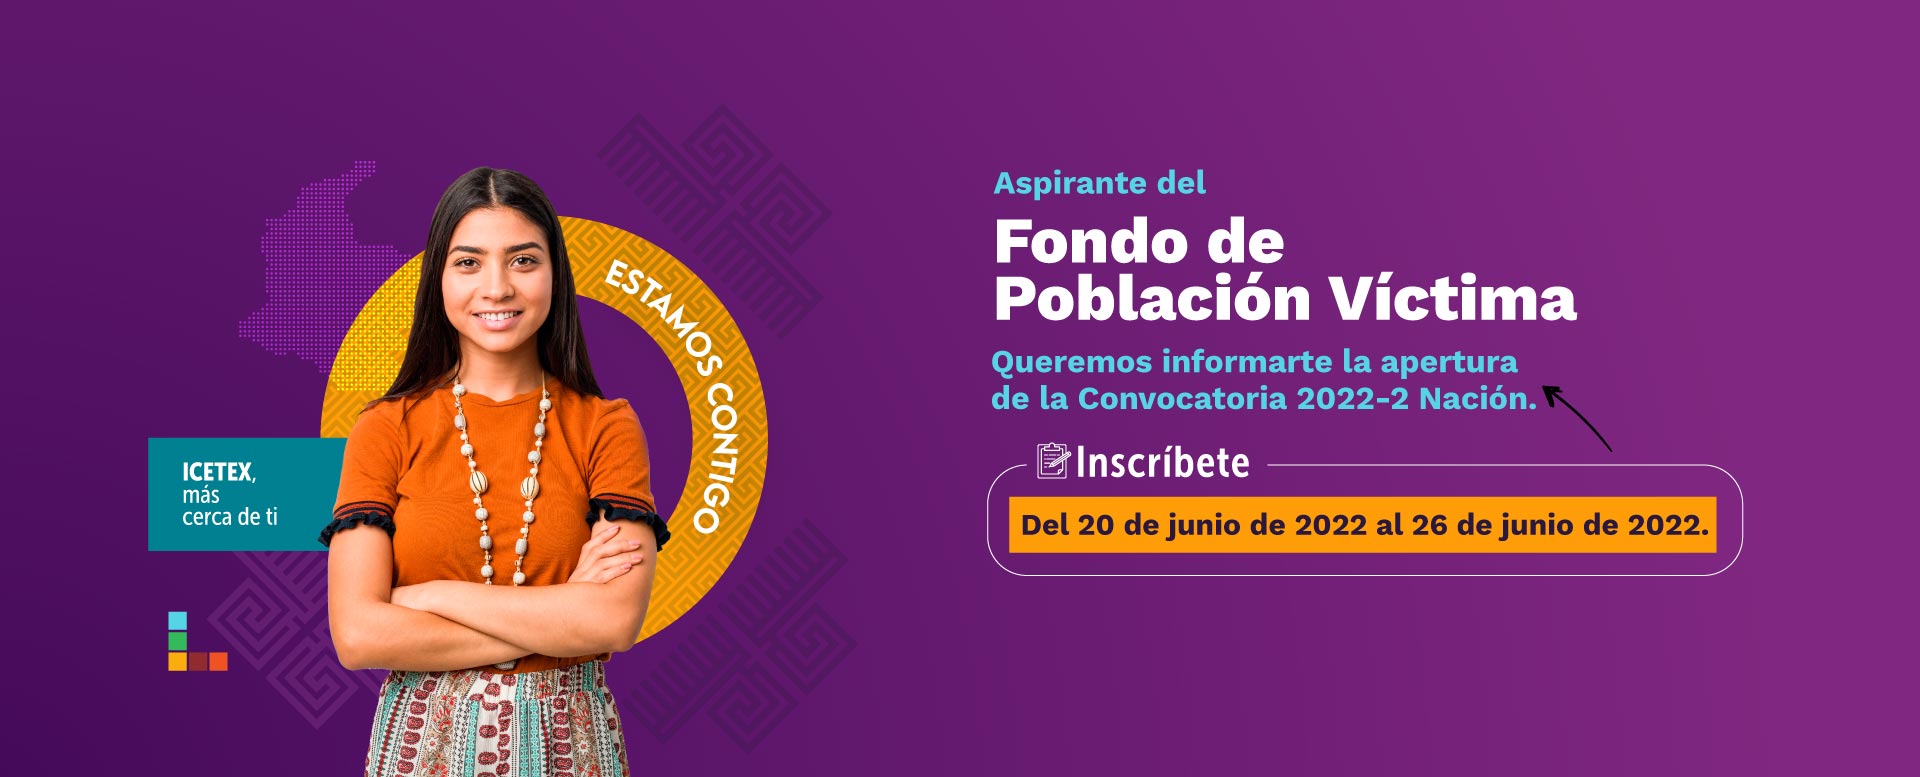 Aspirante del Fondo de Población Víctima, te invitamos a inscribirte del 20 al 26 de junio de 2022.